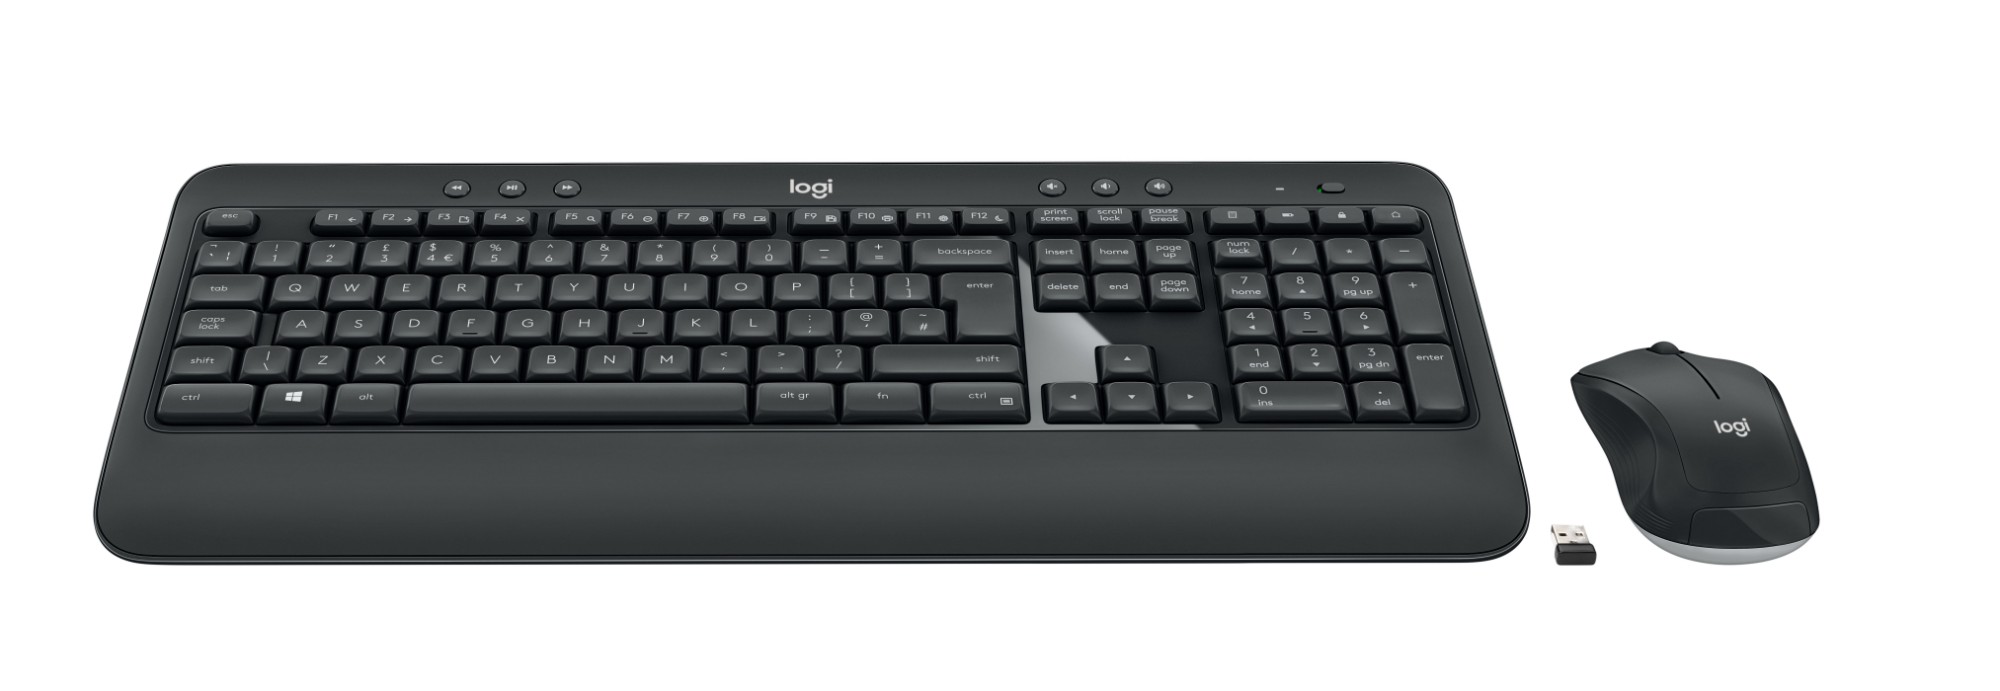 Logitech MK540 ADVANCED Wireless and Mouse Combo keyboard USB QWERTY UK English Black, White